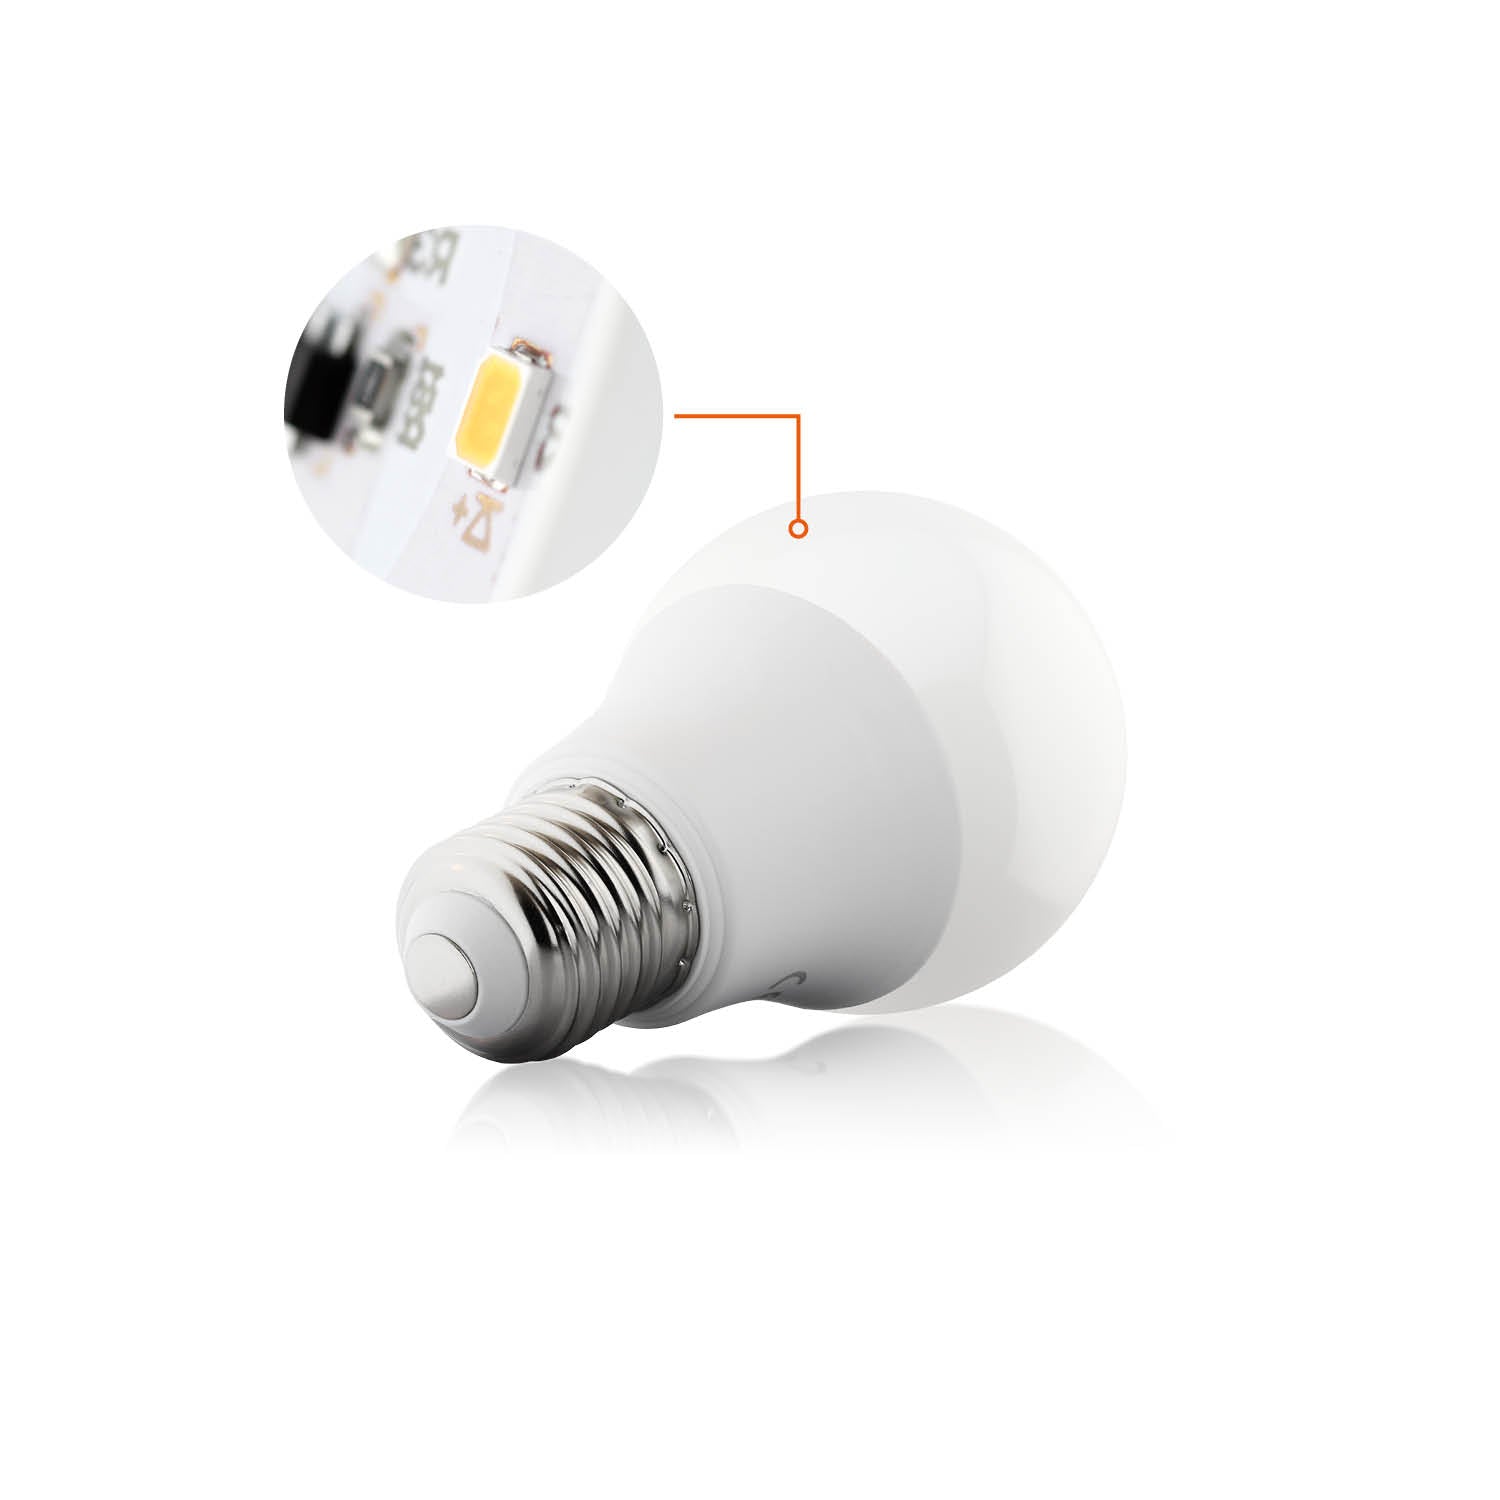 Żarówka LED GS 11W E27 barwa neutralna biała